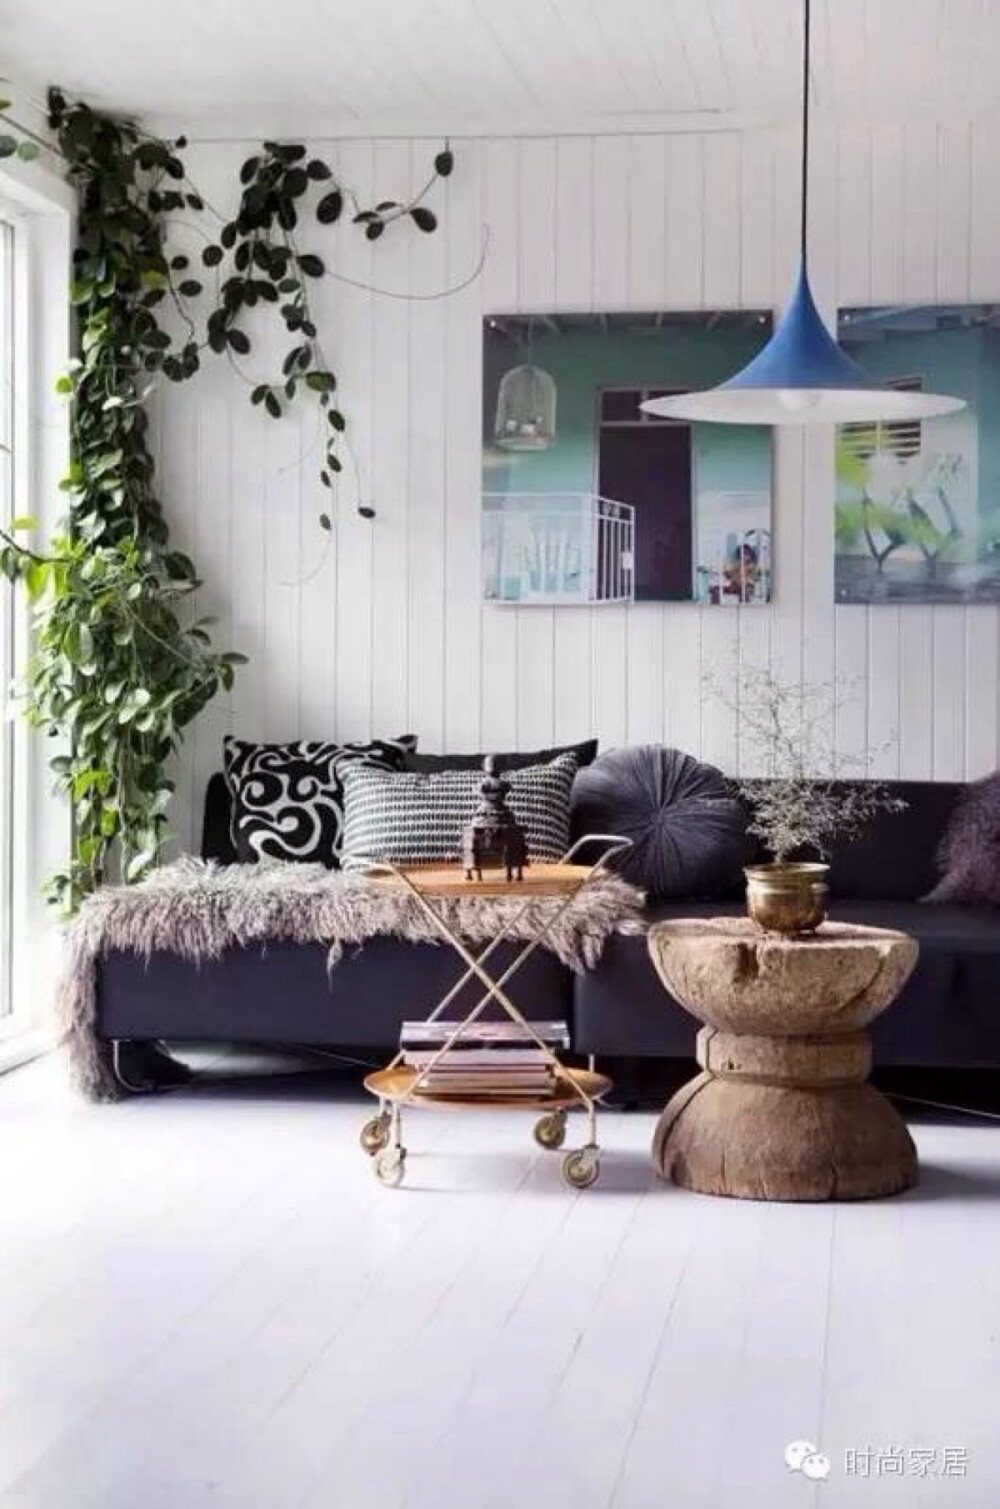 植物是改善心情和环境的居室装饰佳品，无论哪个空间，都可以用绿色植物点缀，不管是什么家装风格，绿色植物都可以为之加分。家居菌为各位读者推荐五种新奇的绿植摆放方式，让创意的绿色填满你的屋子。